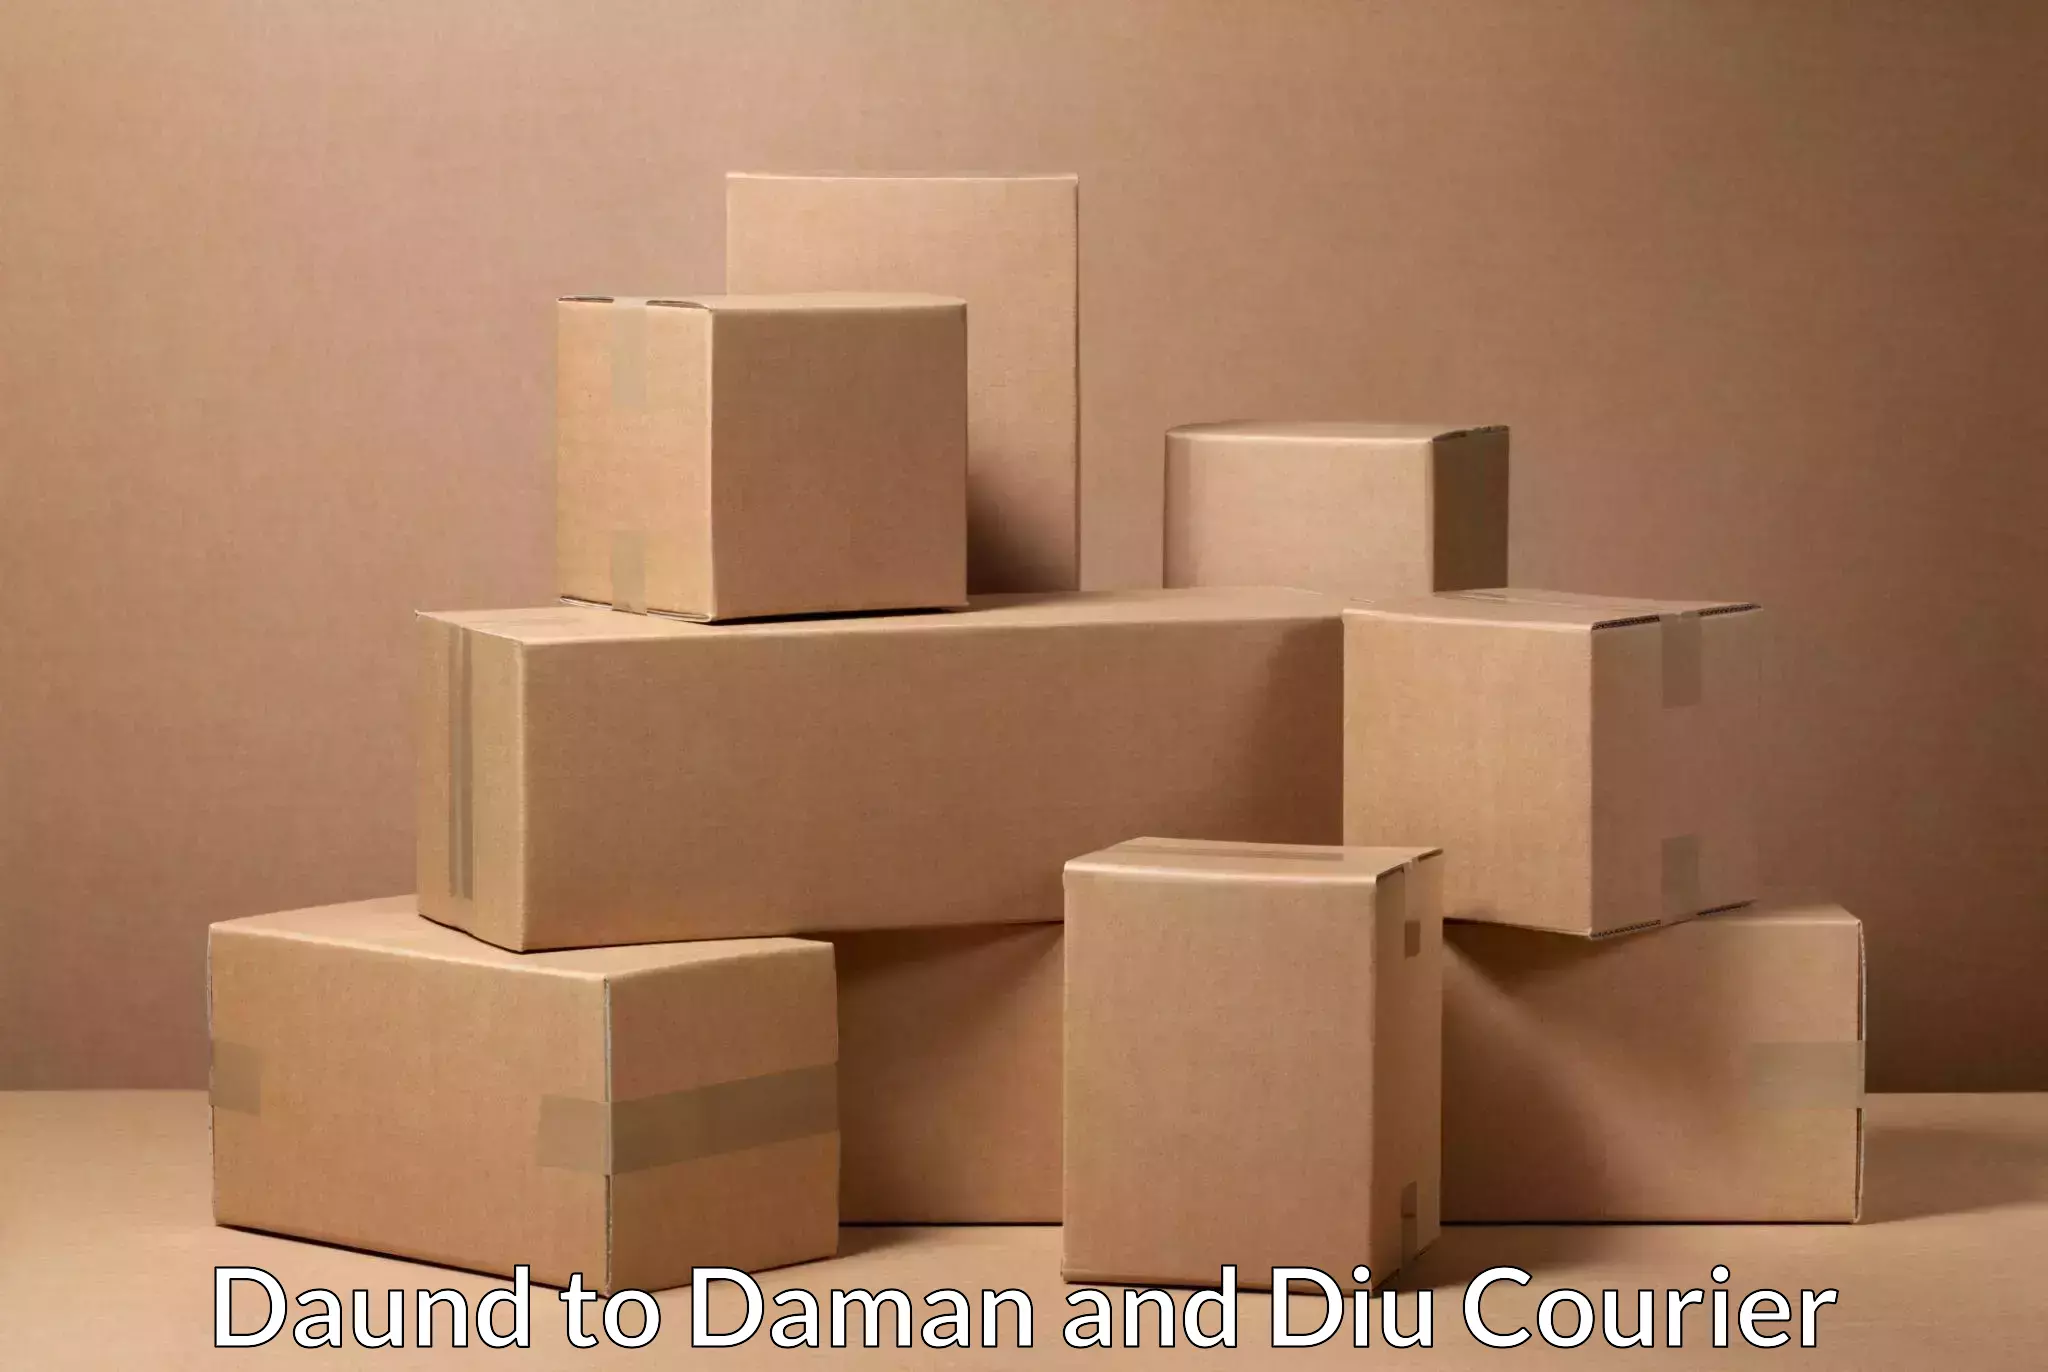 Premium delivery services Daund to Daman